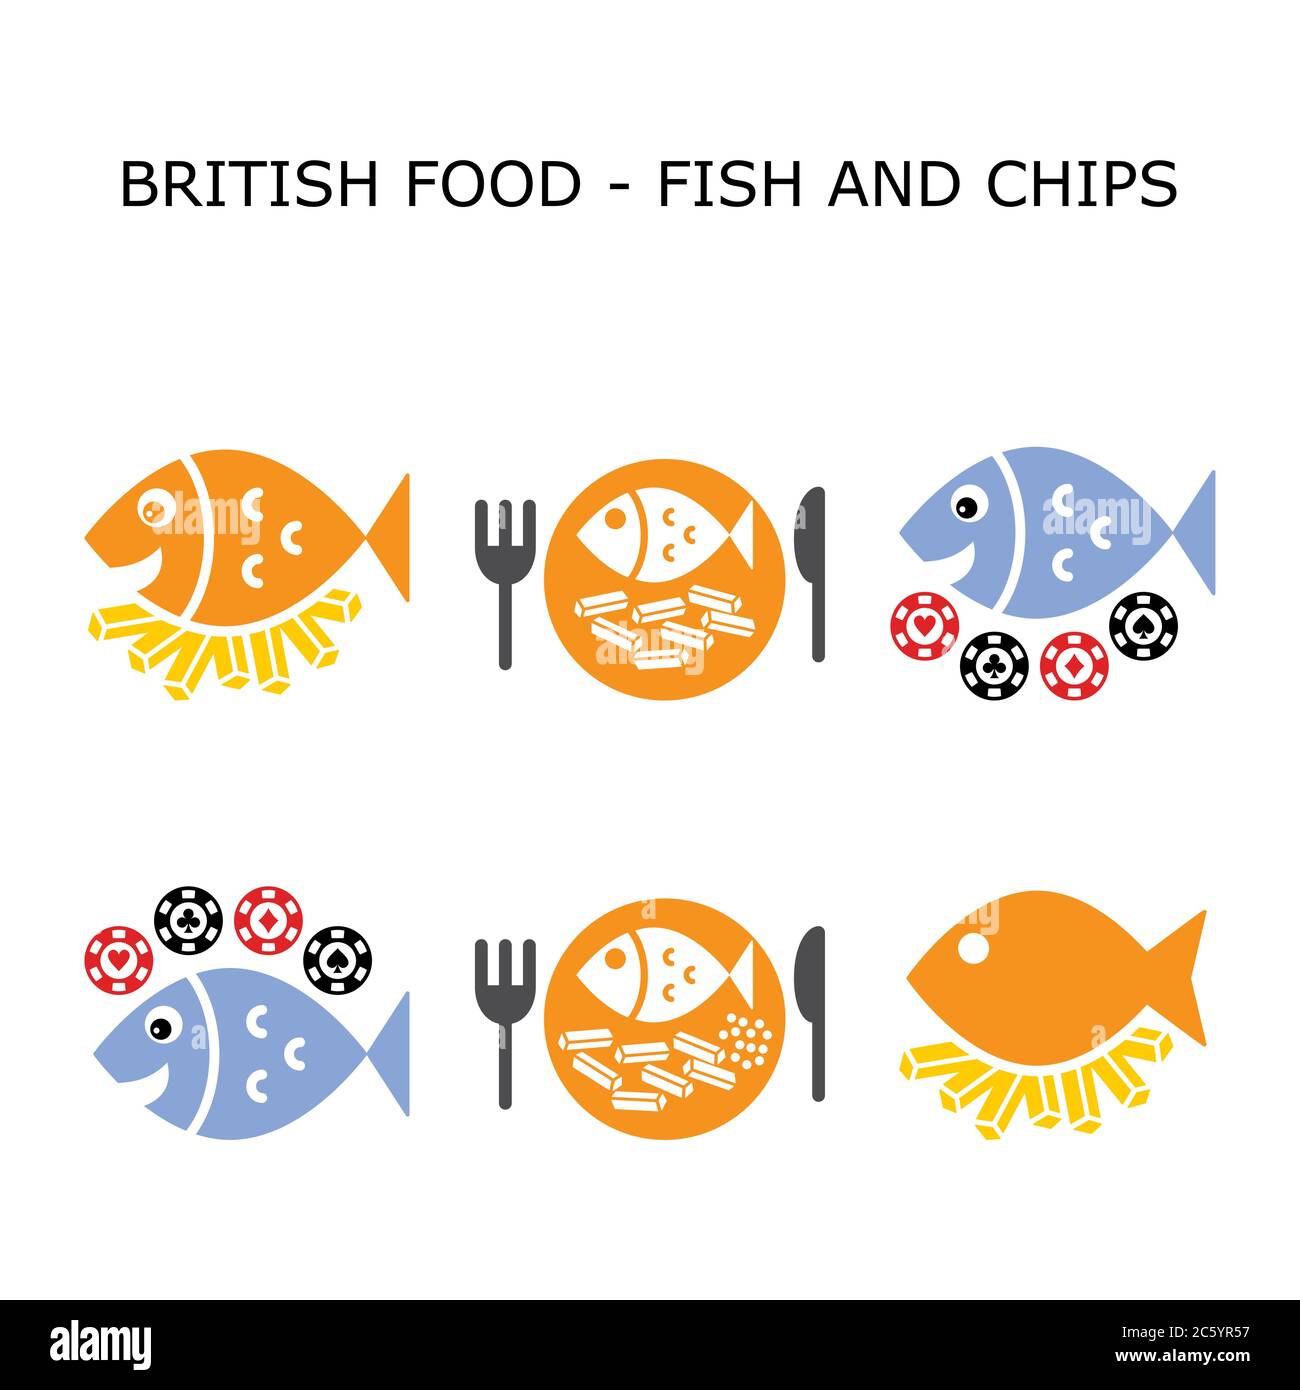 Fisch und Chips Vektor Farbe Icon Set - Britische traditionelle Lebensmittel-Design Stock Vektor